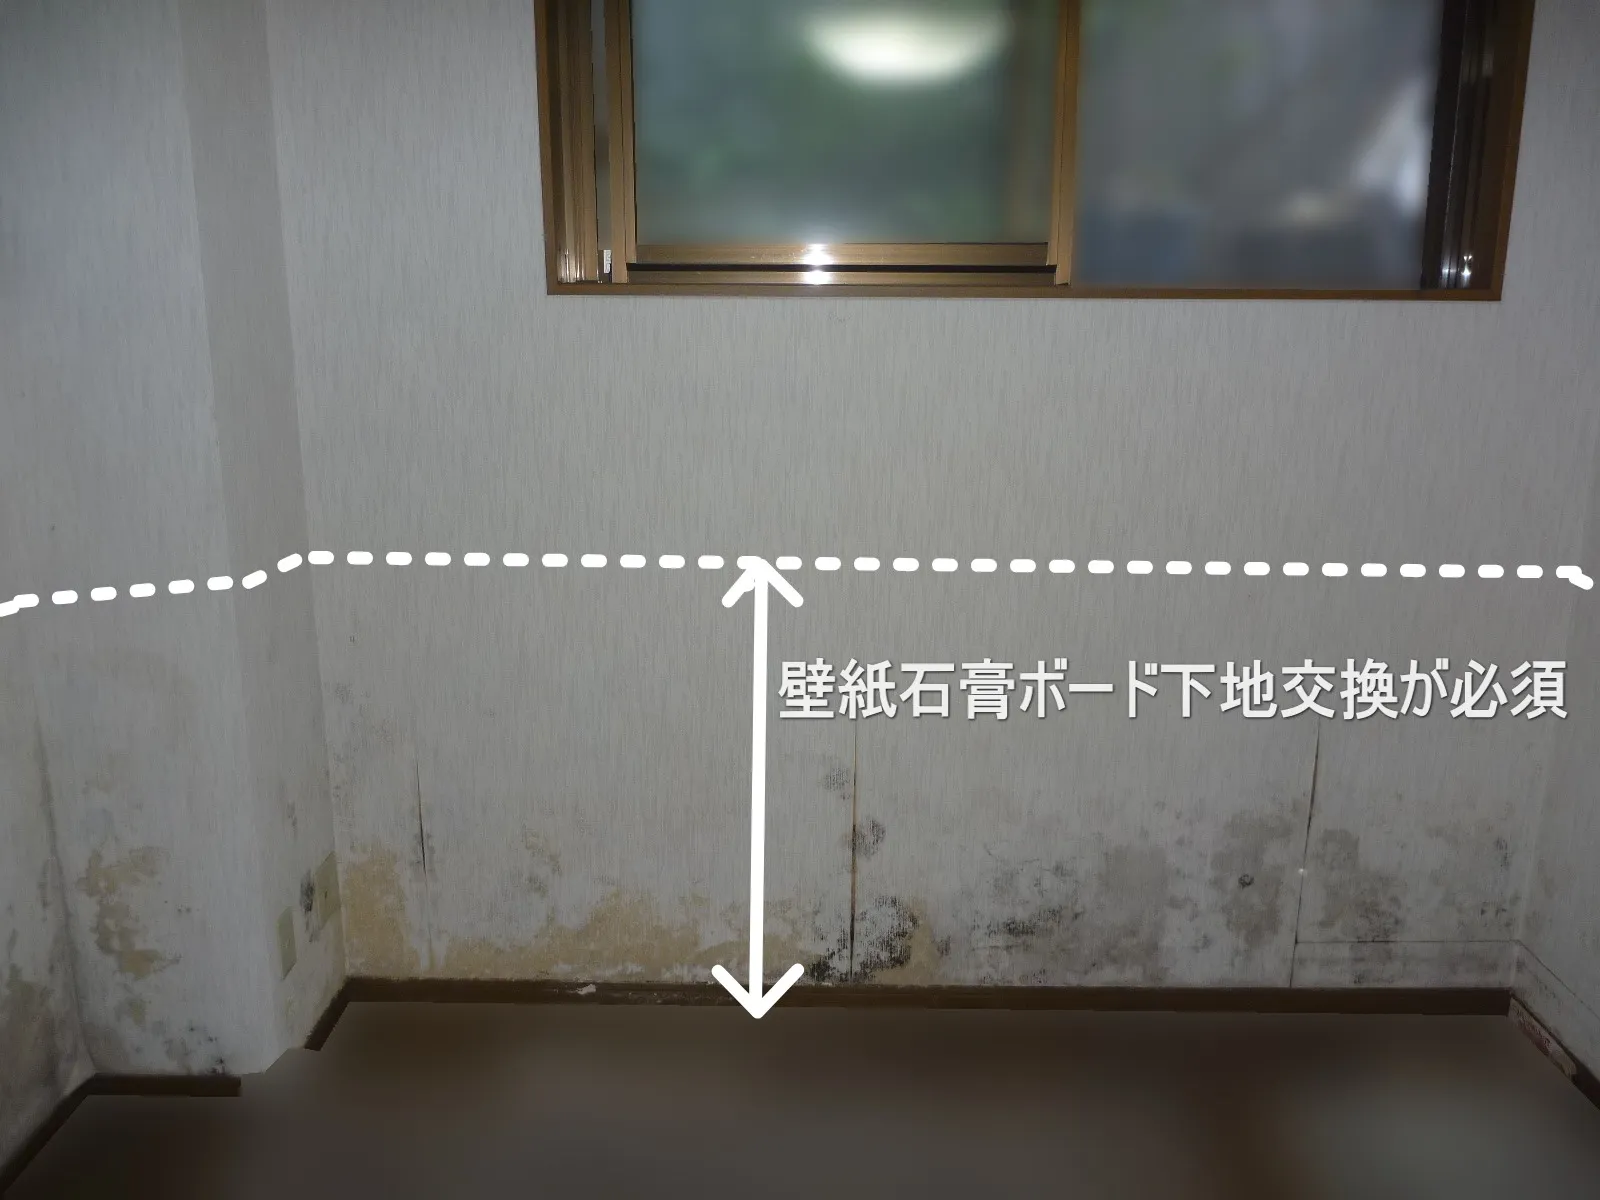 東京に多い半地下の壁紙石膏ボード下地は交換し防カビ工事を